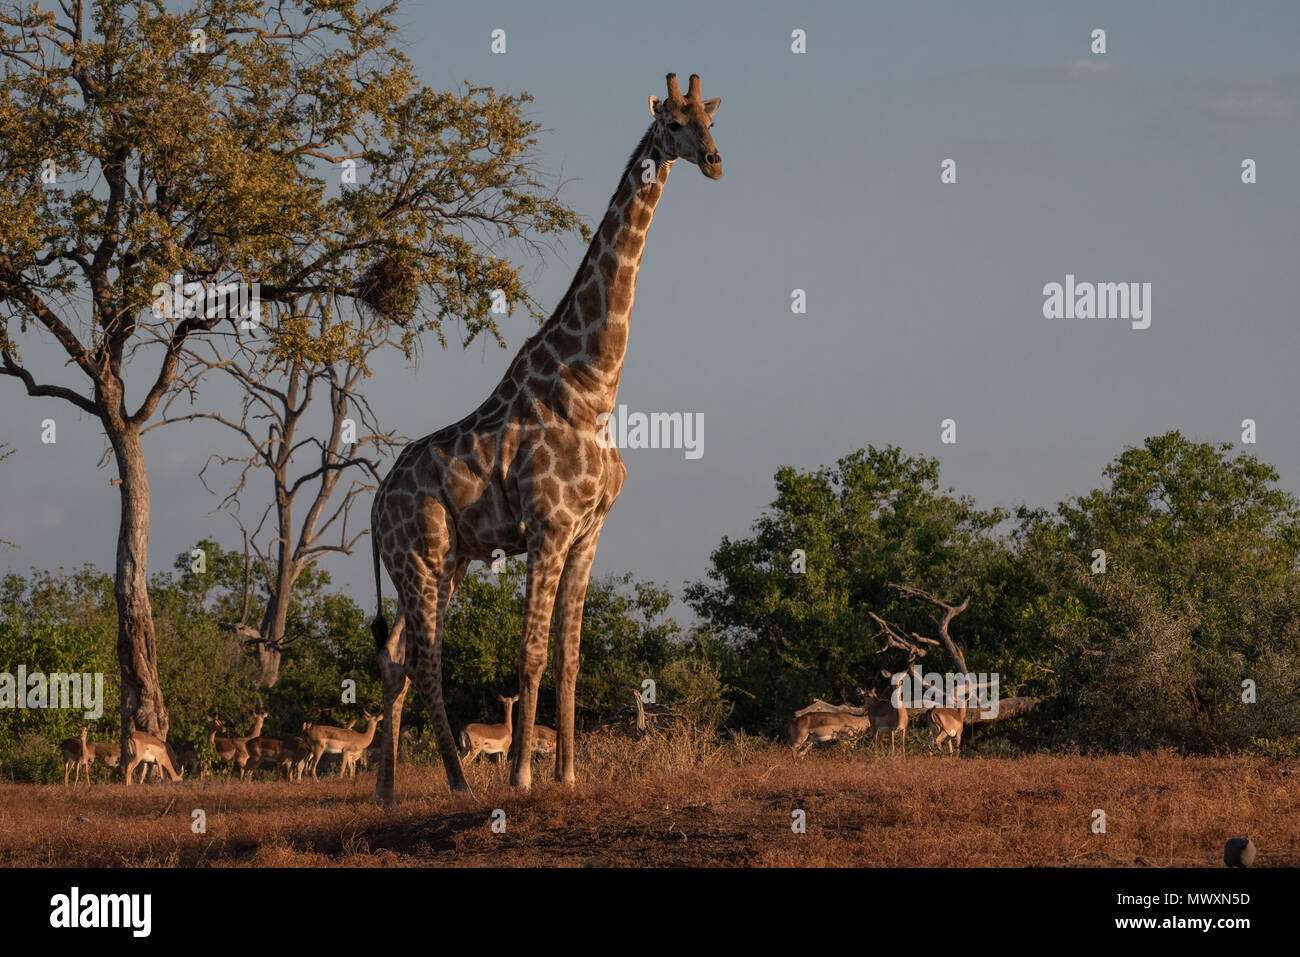 Southern African Giraffe at Mashatu in Botswana Stock Photo